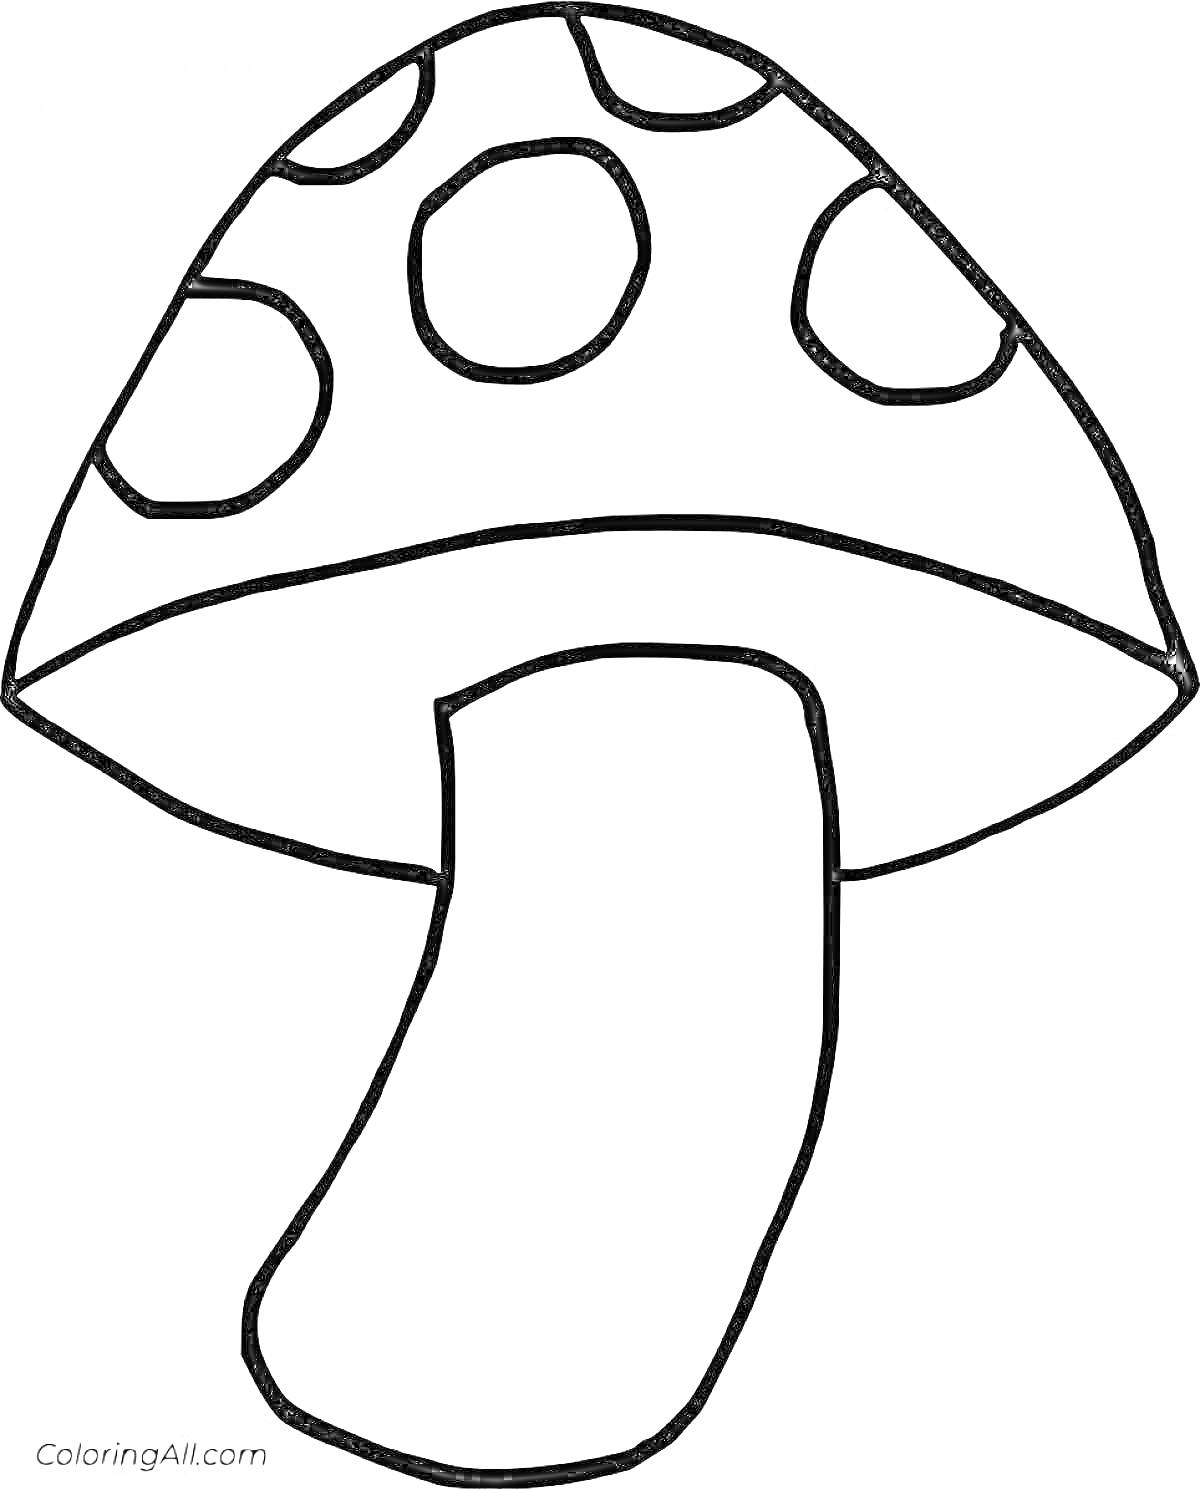 Раскраска гриб с пятнистыми шляпкой и ножкой